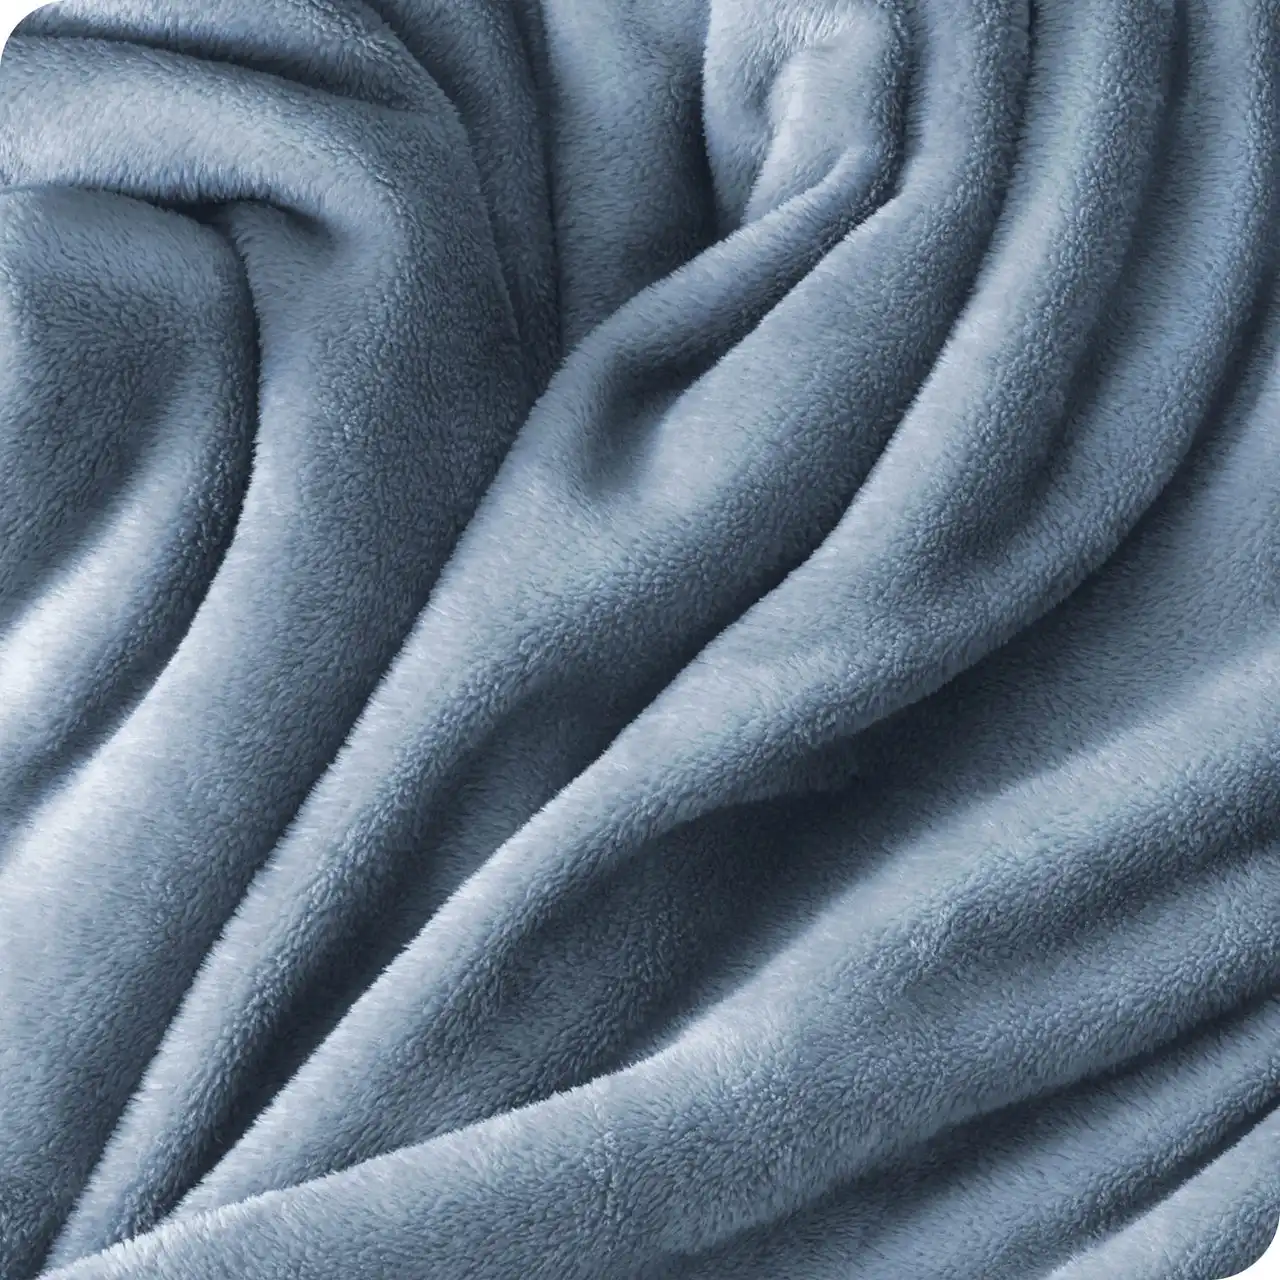 Cozy Fluffy ultra soft Microplush coperta coperta in microfibra 100% resistente alle rughe al tatto vellutata